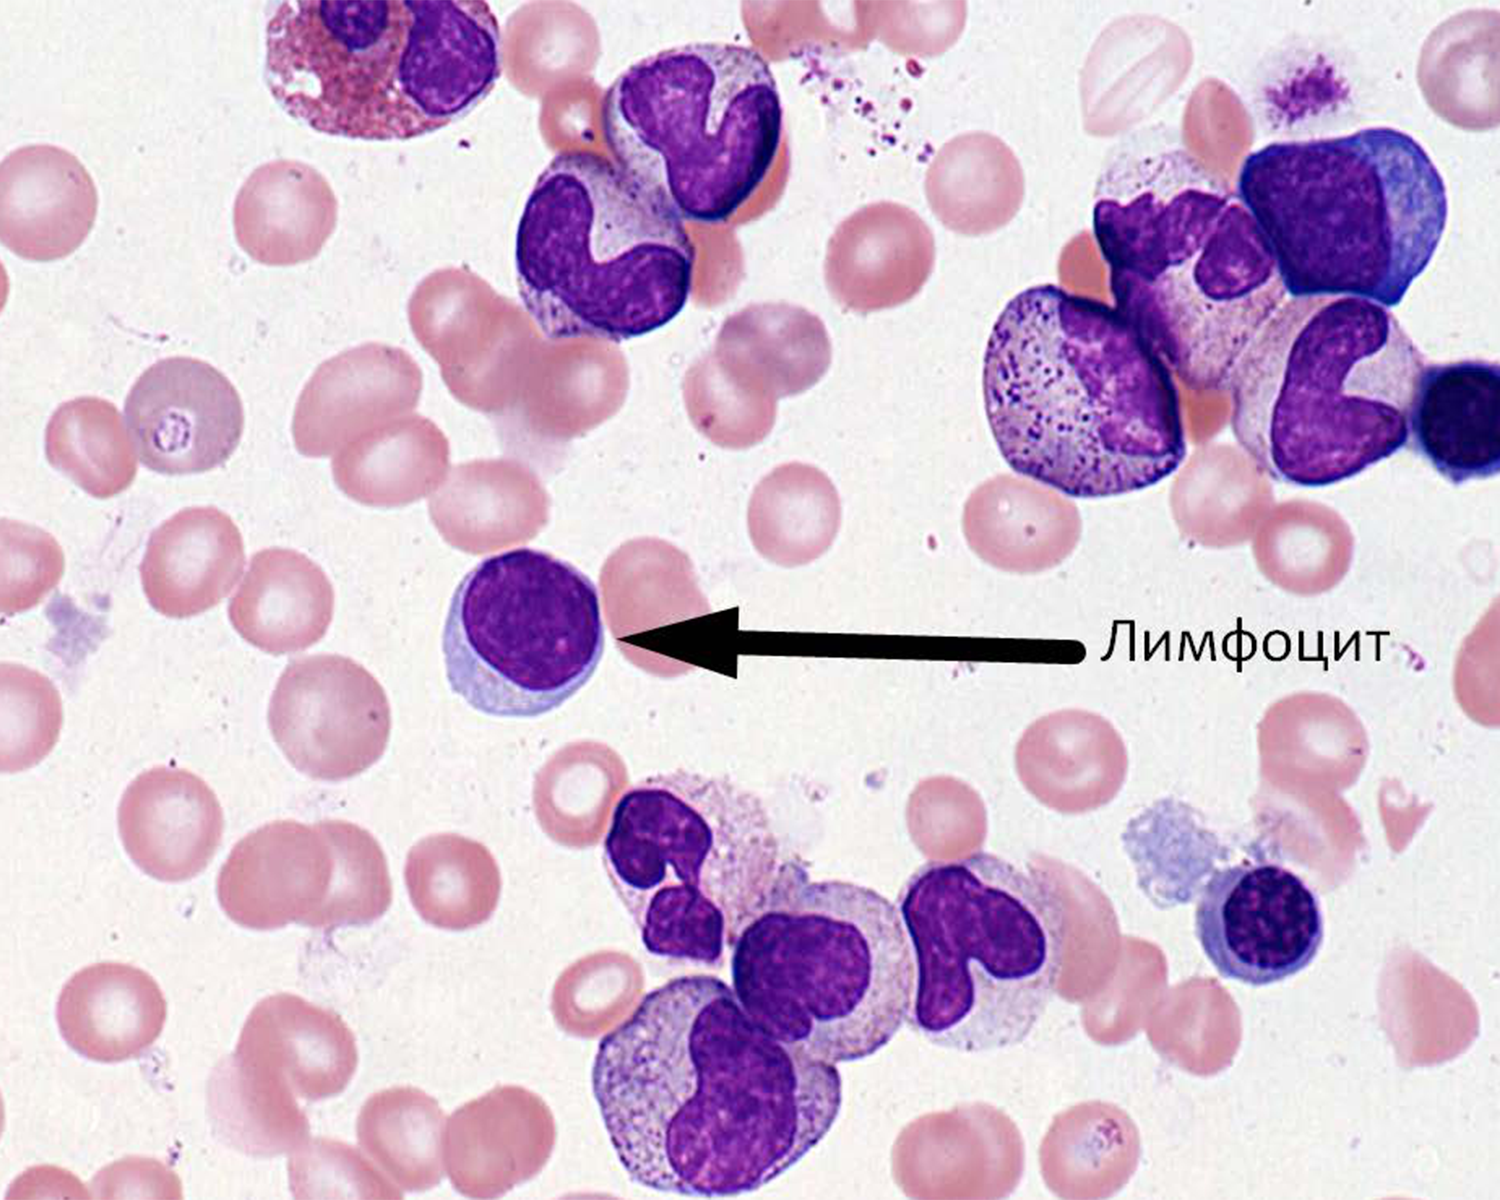 Т клетки крови. Т-лимфоцит мазок крови. Т лимфоциты в микроскопе. Лимфоциты в крови гистология. Моноцит гистология.